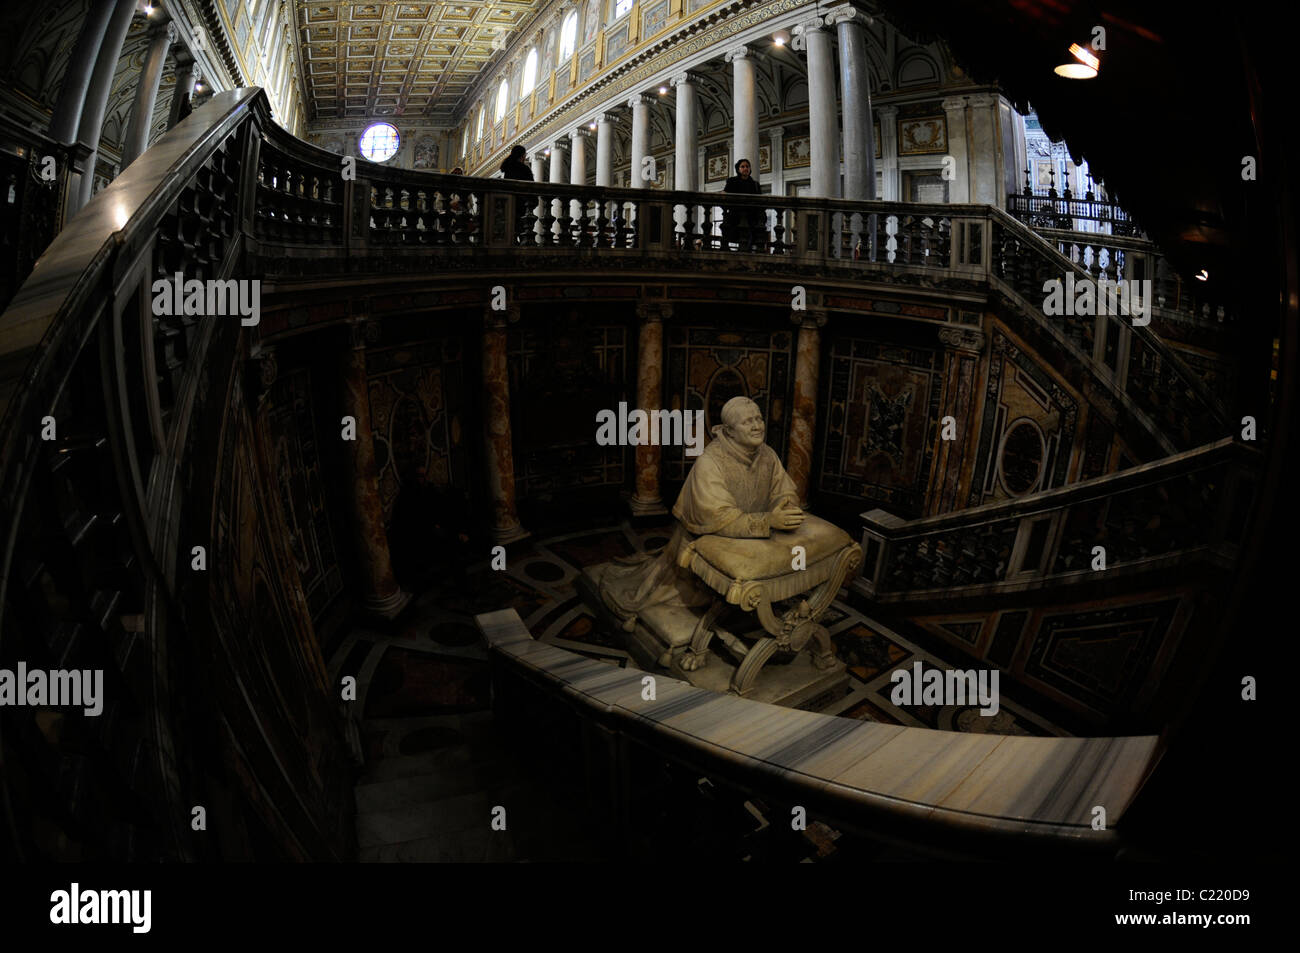 Statue of Pope Pius IX praying before the relic in The Basilica di Santa Maria Maggiore, Rome, Italy. Stock Photo